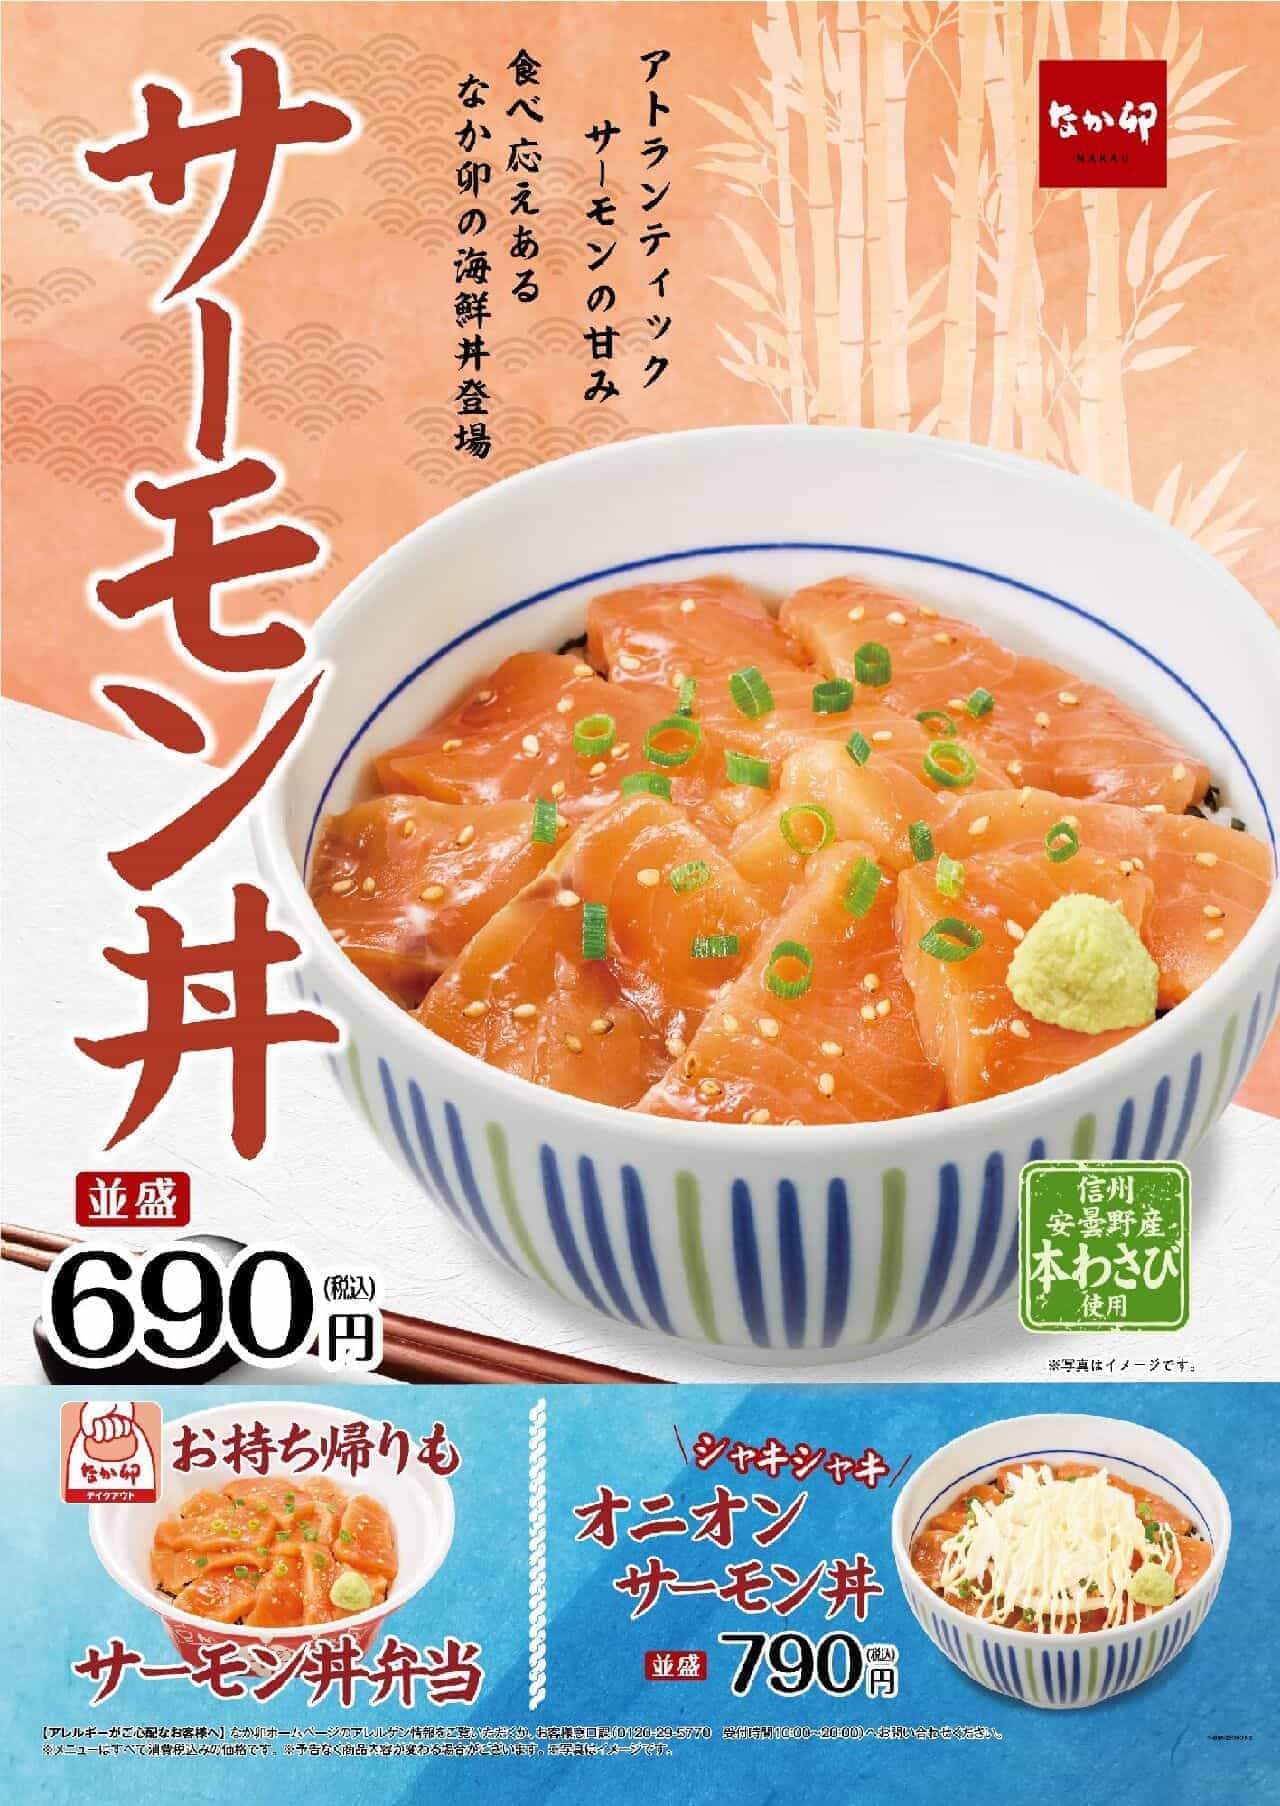 なか卯「サーモン丼」「オニオンサーモン丼」